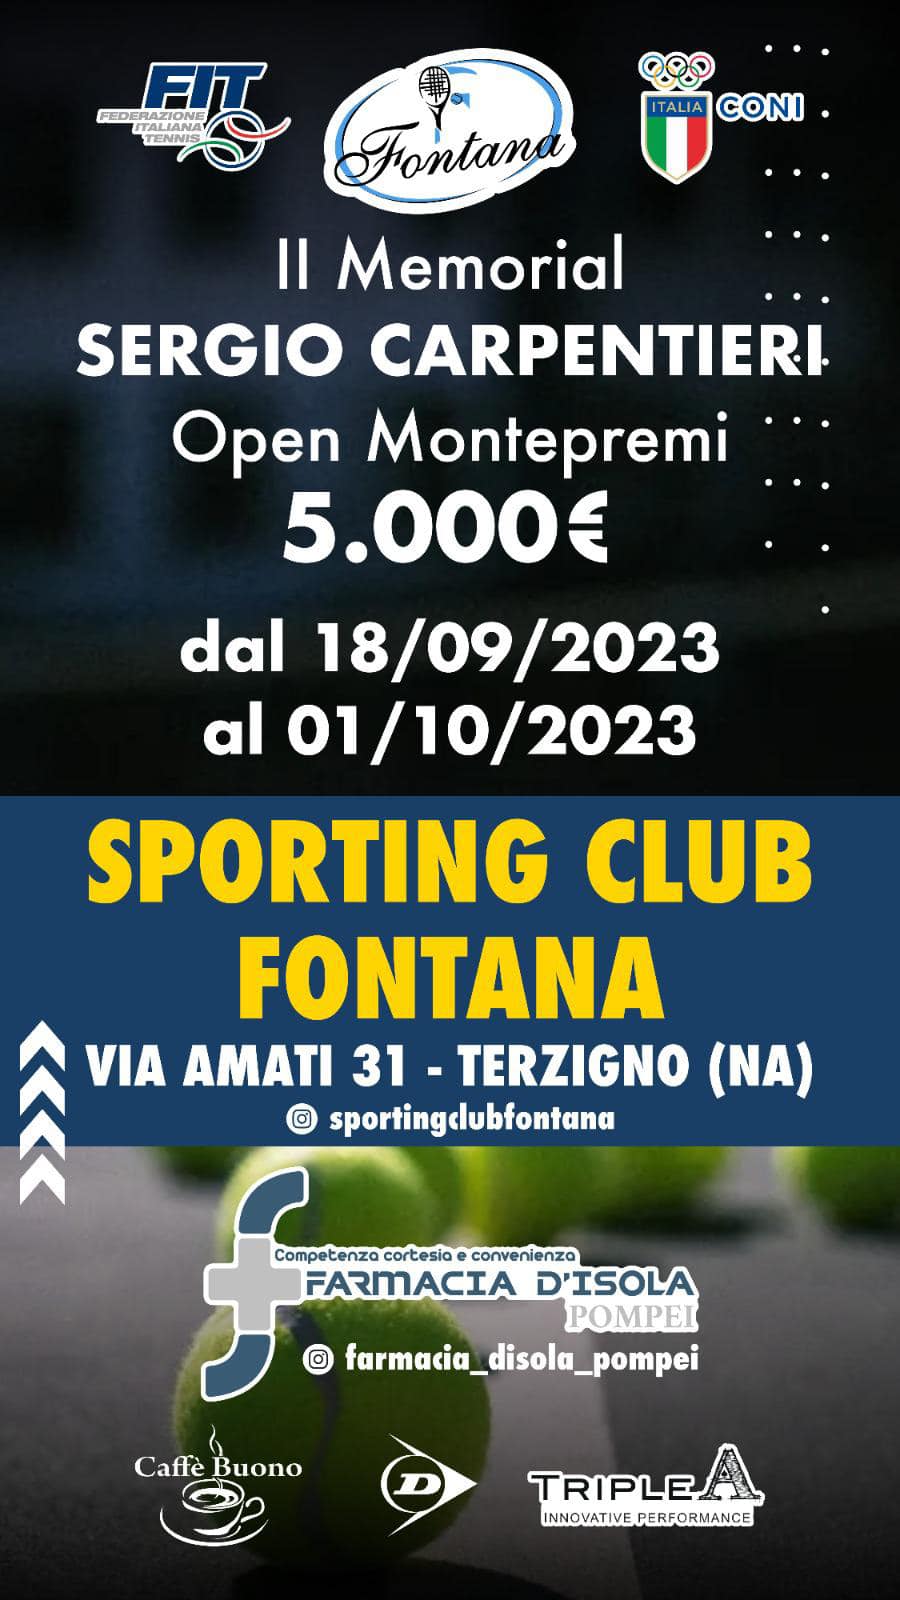 Sporting Club Fontana, al via il Torneo Open II Memorial Sergio Carpentieri